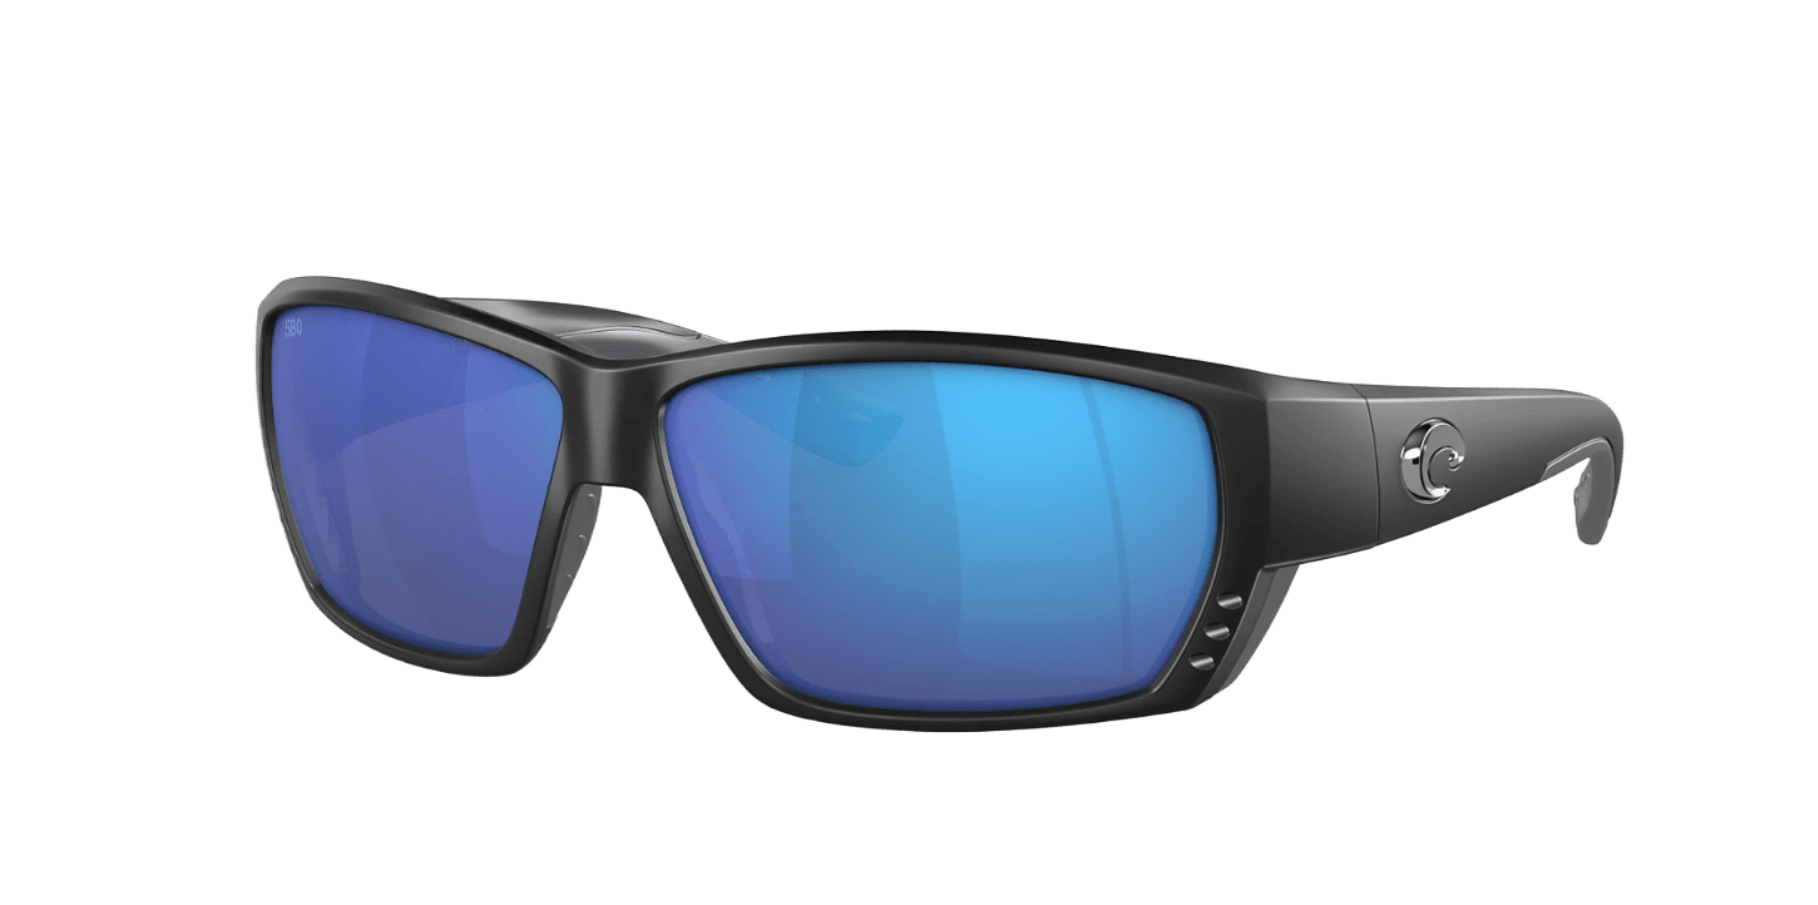 COSTA DEL MAR Sunglasses Cost Del Mar Tuna Alley Matte Black/Blue Mirror Sunglasses